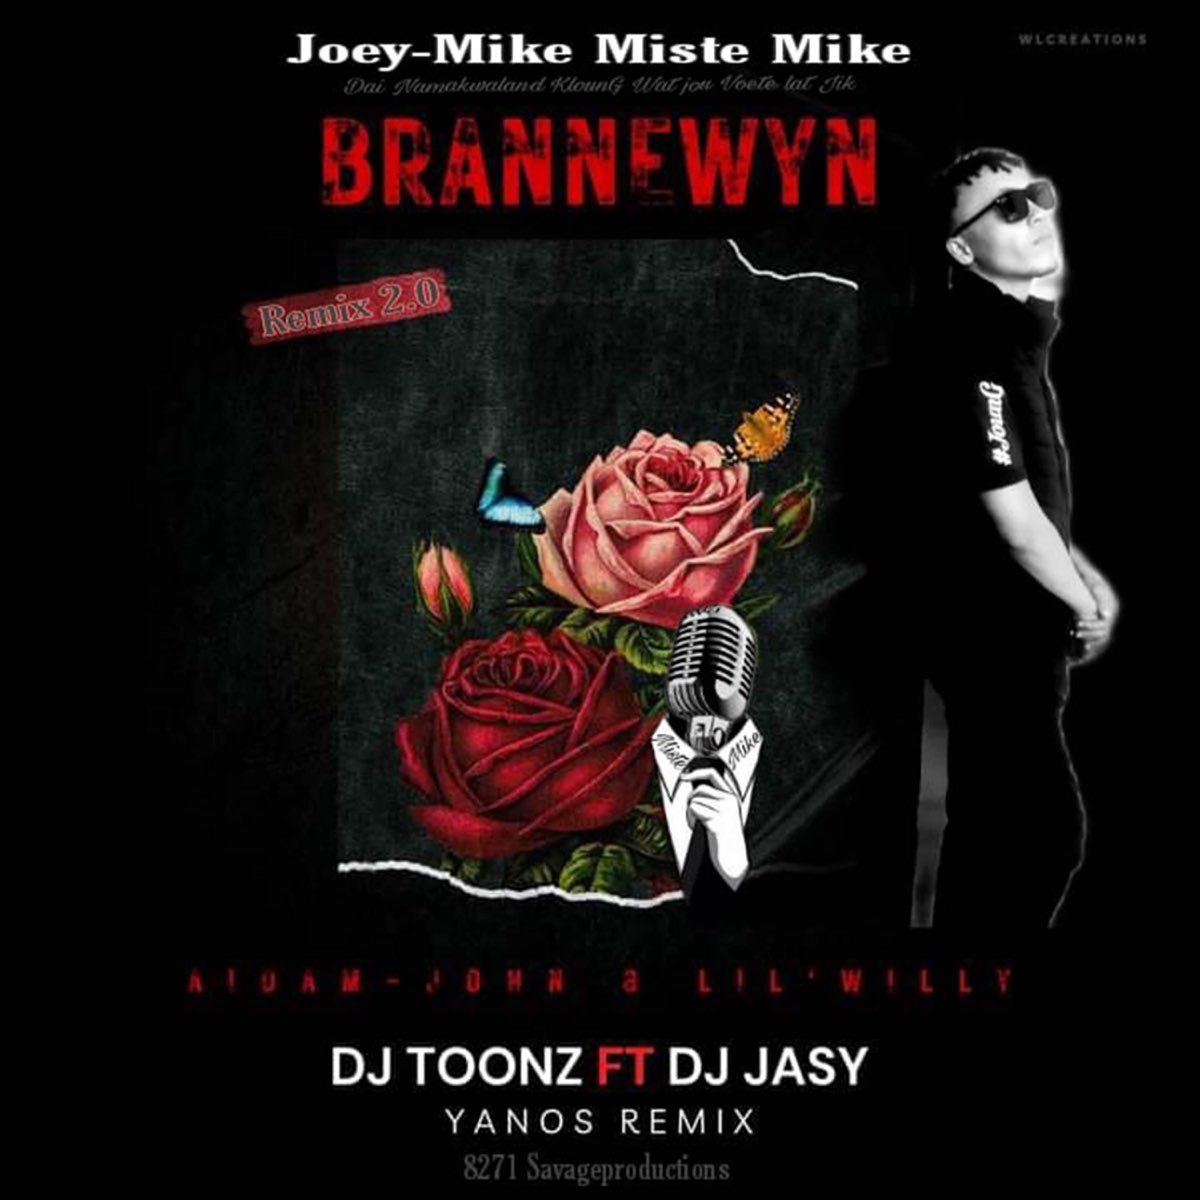 ‎Brannewyn (feat. Dj Jasy & Dj Toonz) [Aidam-John & Lil Willy Remix ...